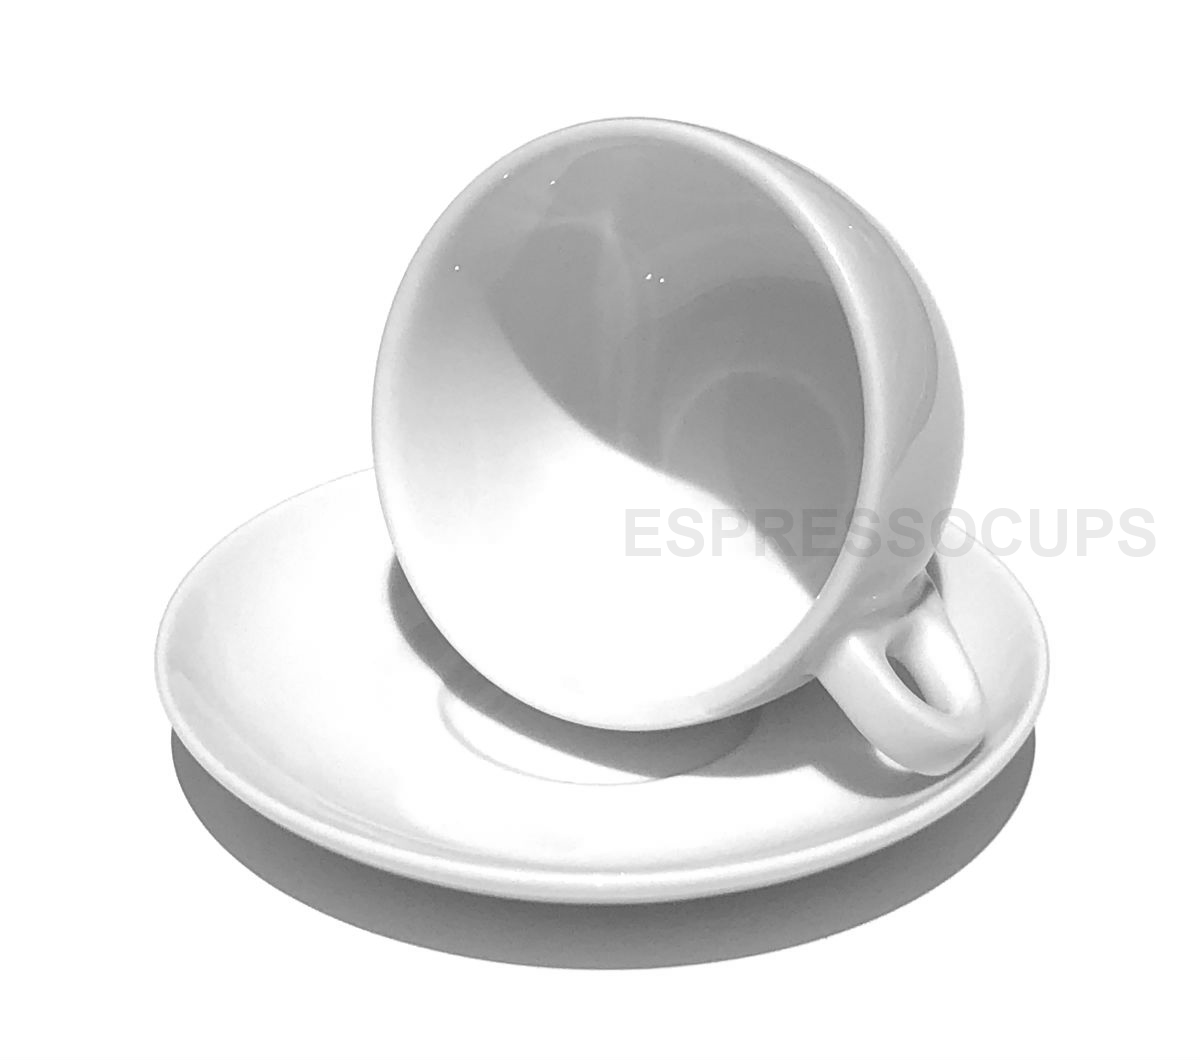 https://www.espressocups.com.sg/images/Ancap%20rew1%20-%20Verona%20latte%20(350ml)%20B.png